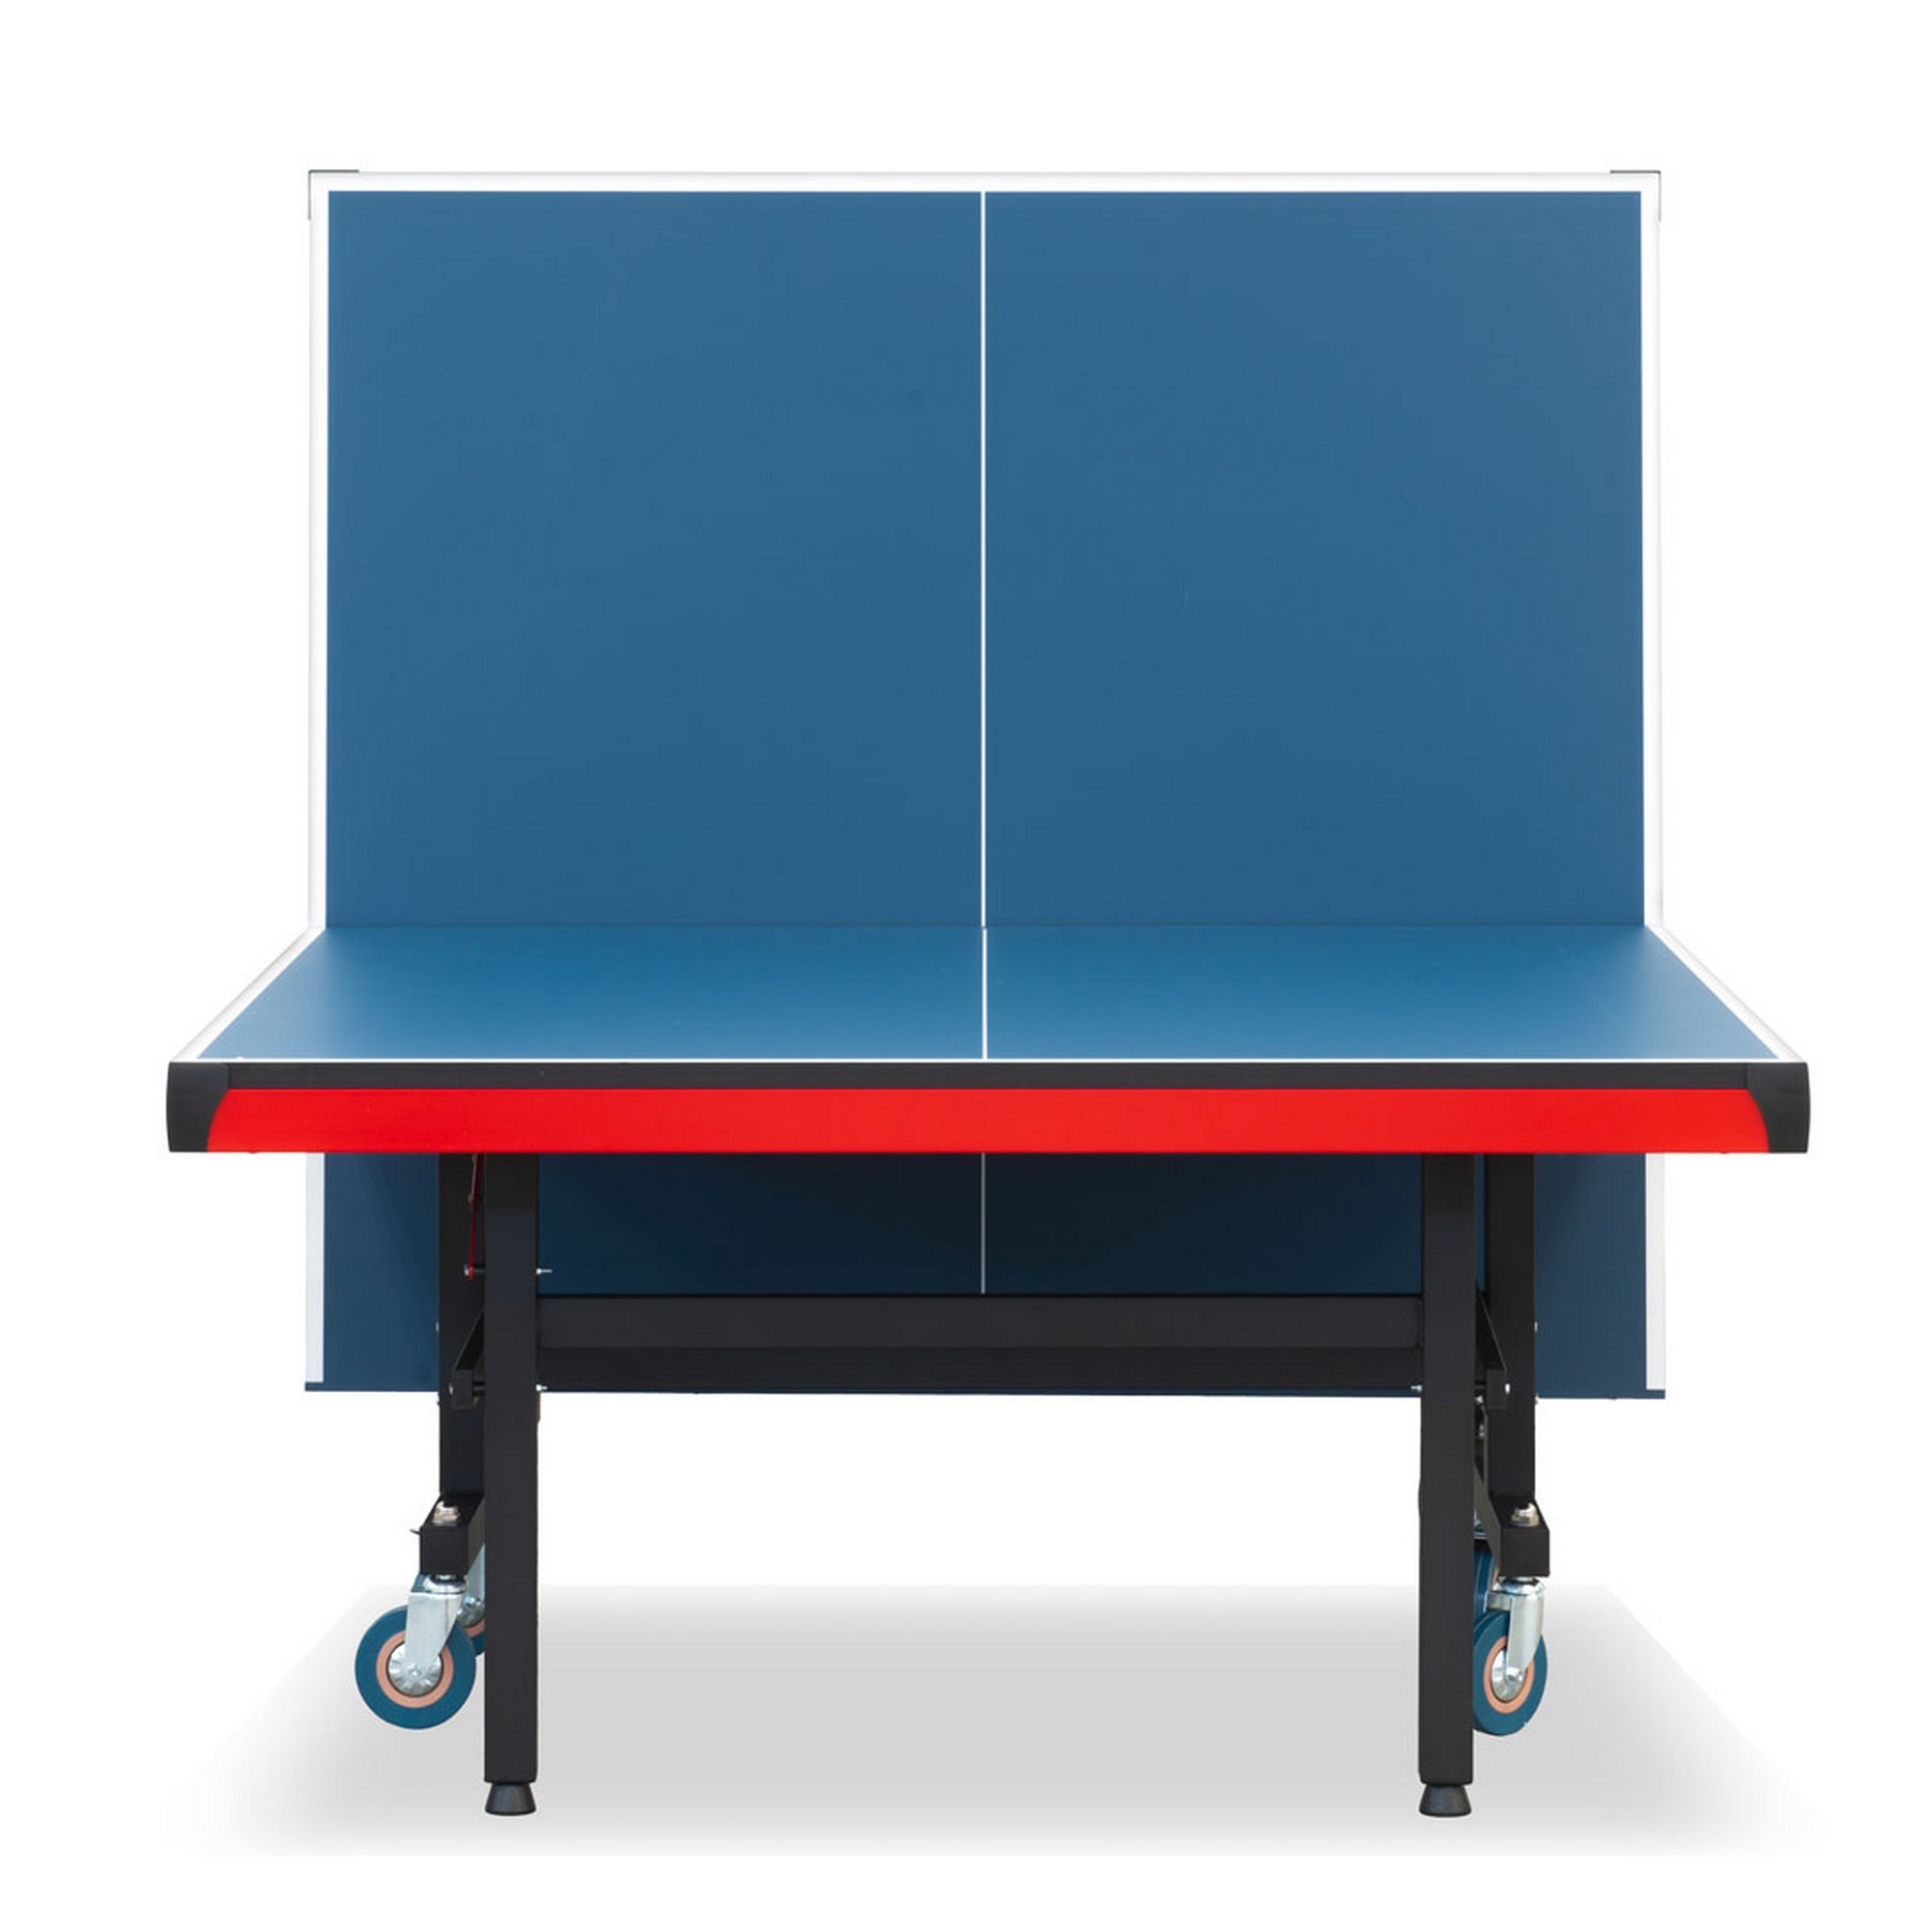 Теннисный стол складной для помещений S-320 Winner 51.320.02.0 2000_2000